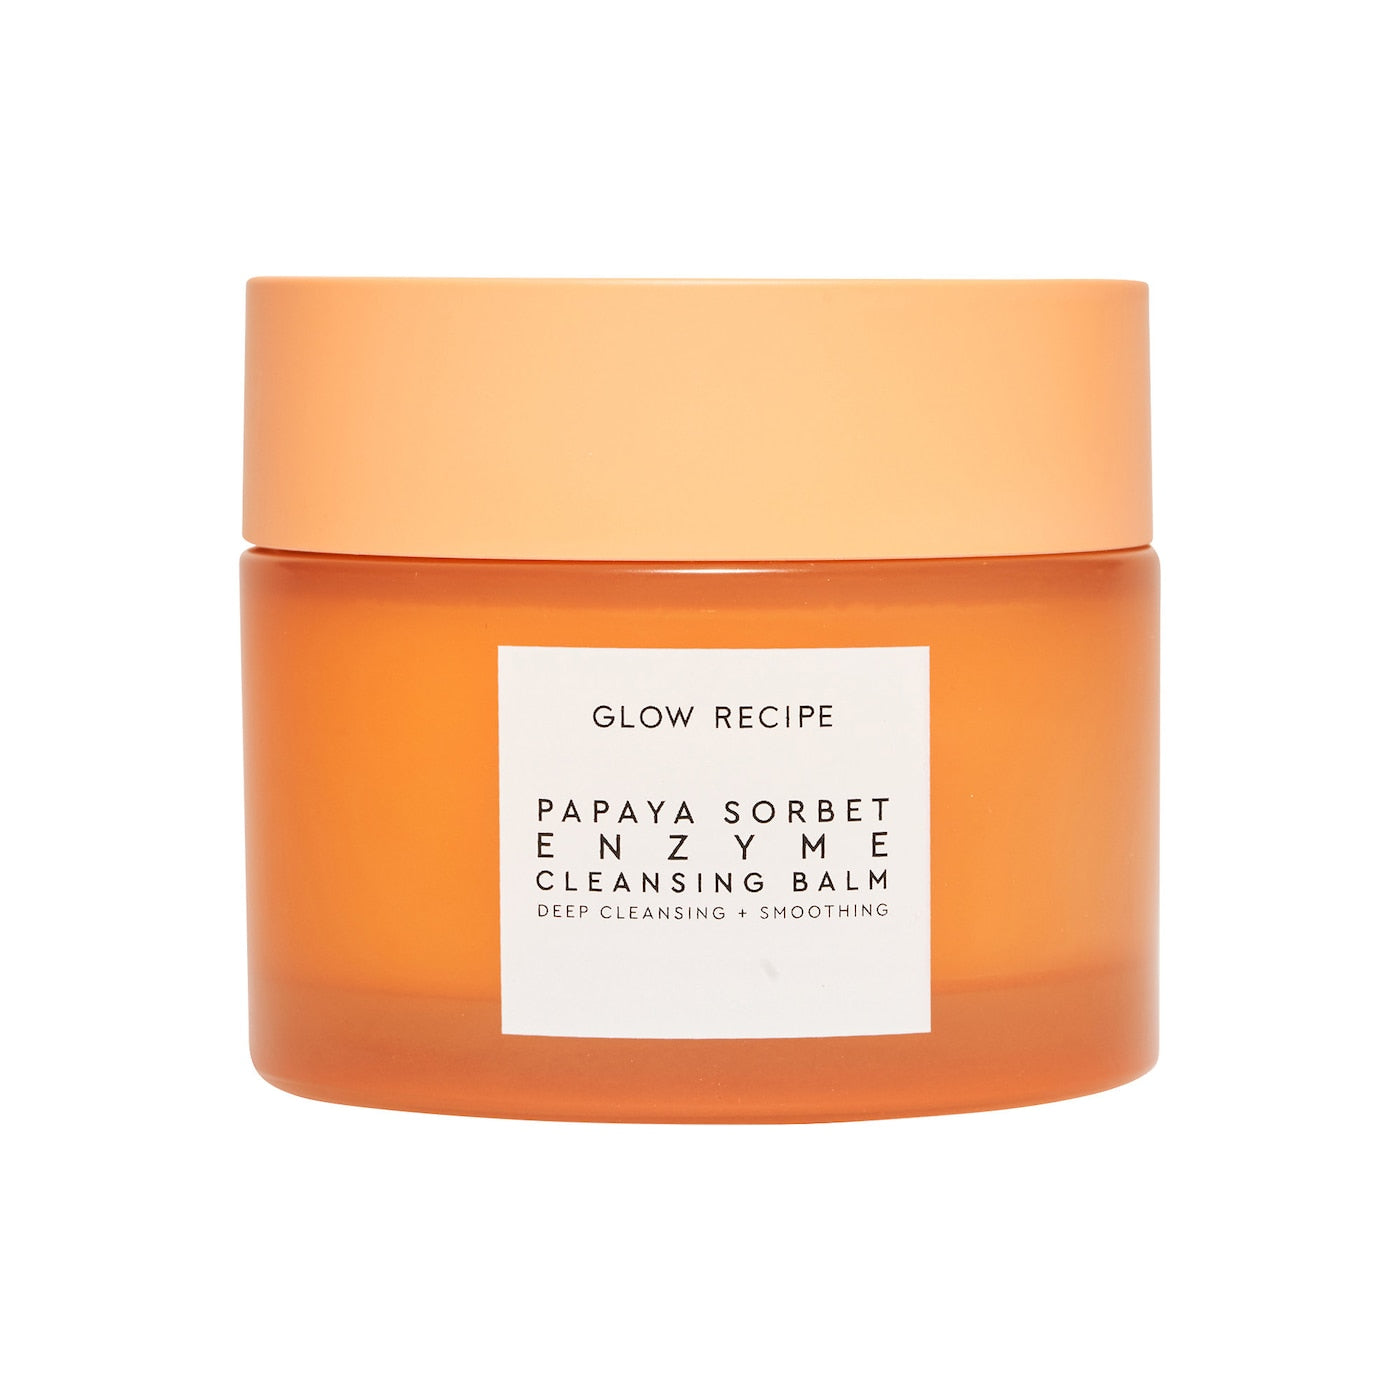 GLOW RECIPE - Papaya Sorbet Smoothing Enzyme Cleansing Balm & Makeup Remover